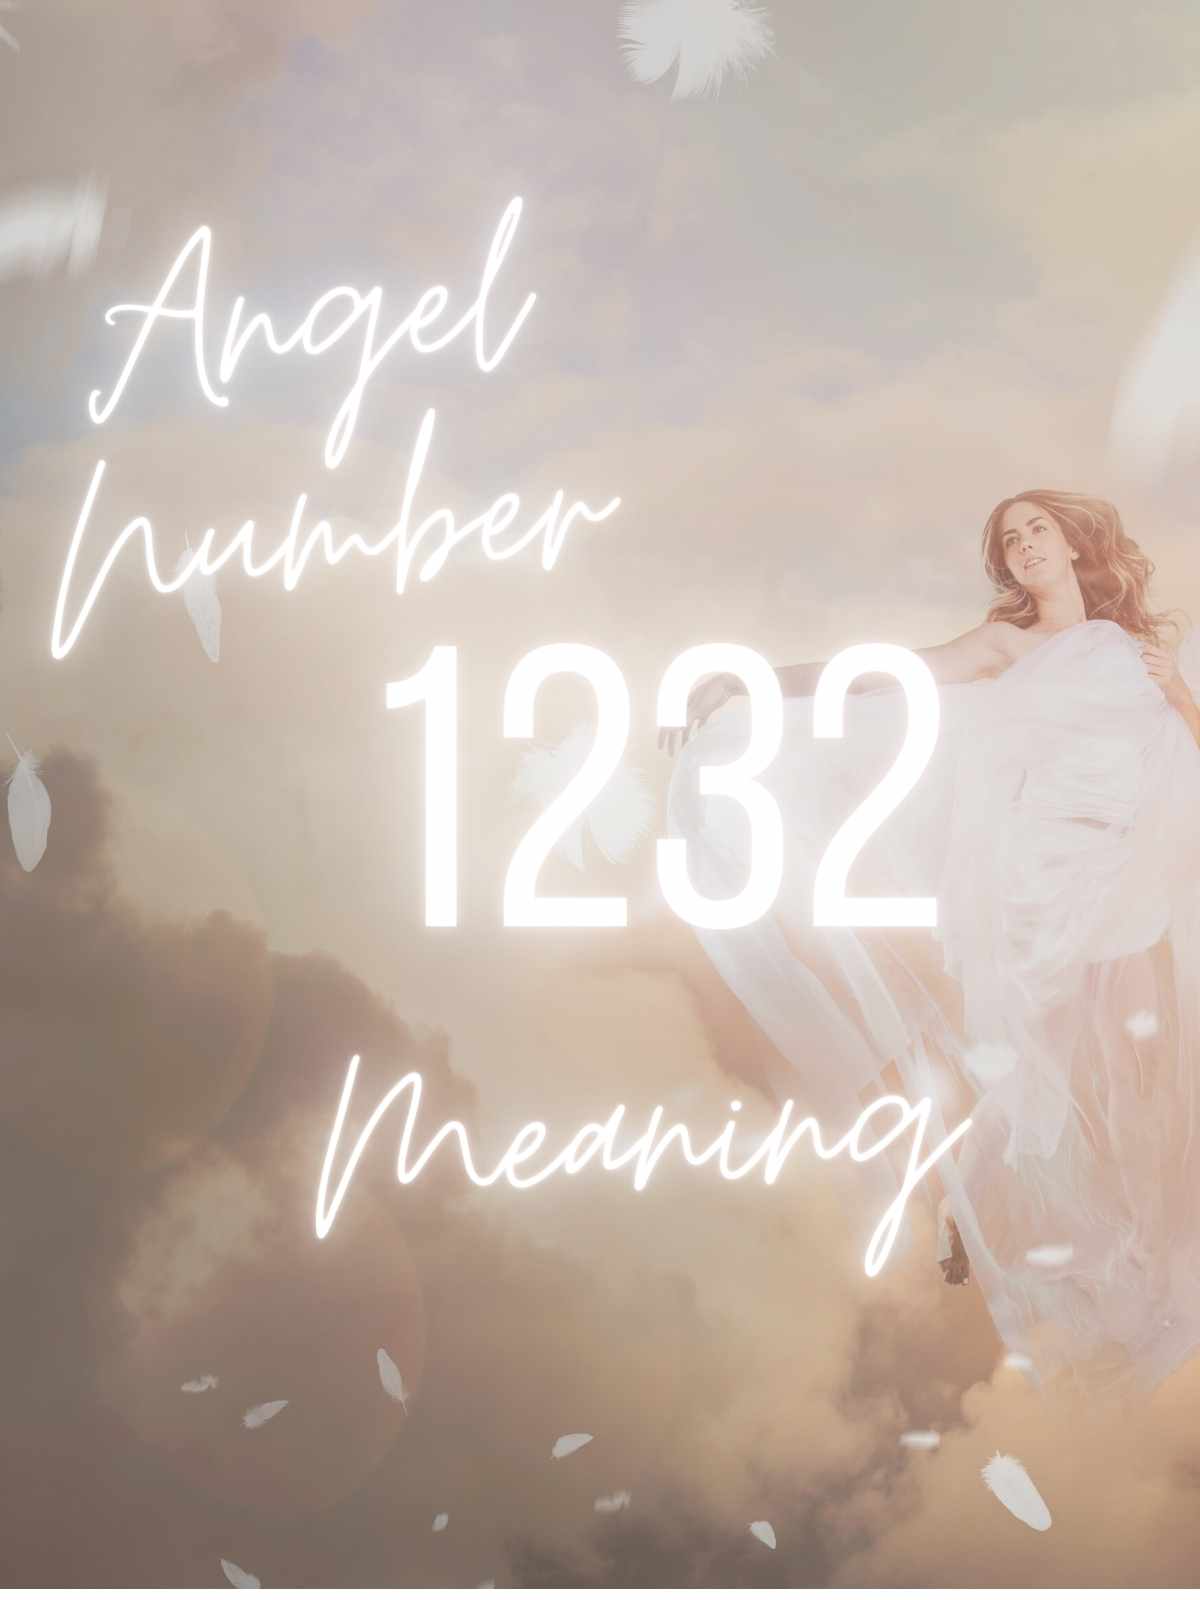 angel number 1232